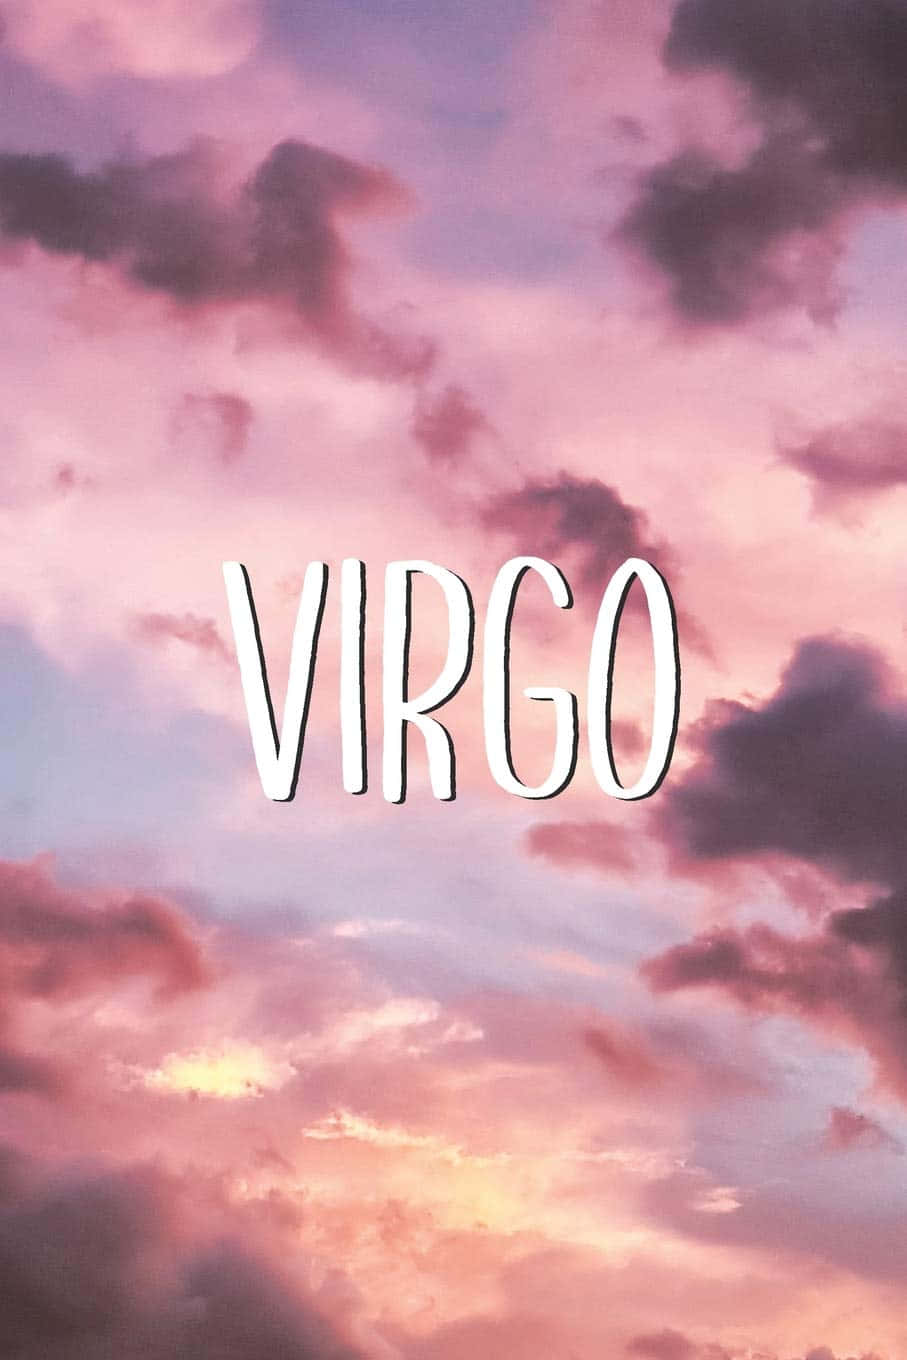 Virgo Wallpapers, Virgo Wallpapers, Virgo Wallpapers, Virgo Wallpapers, Virgo Wallpapers, Vir